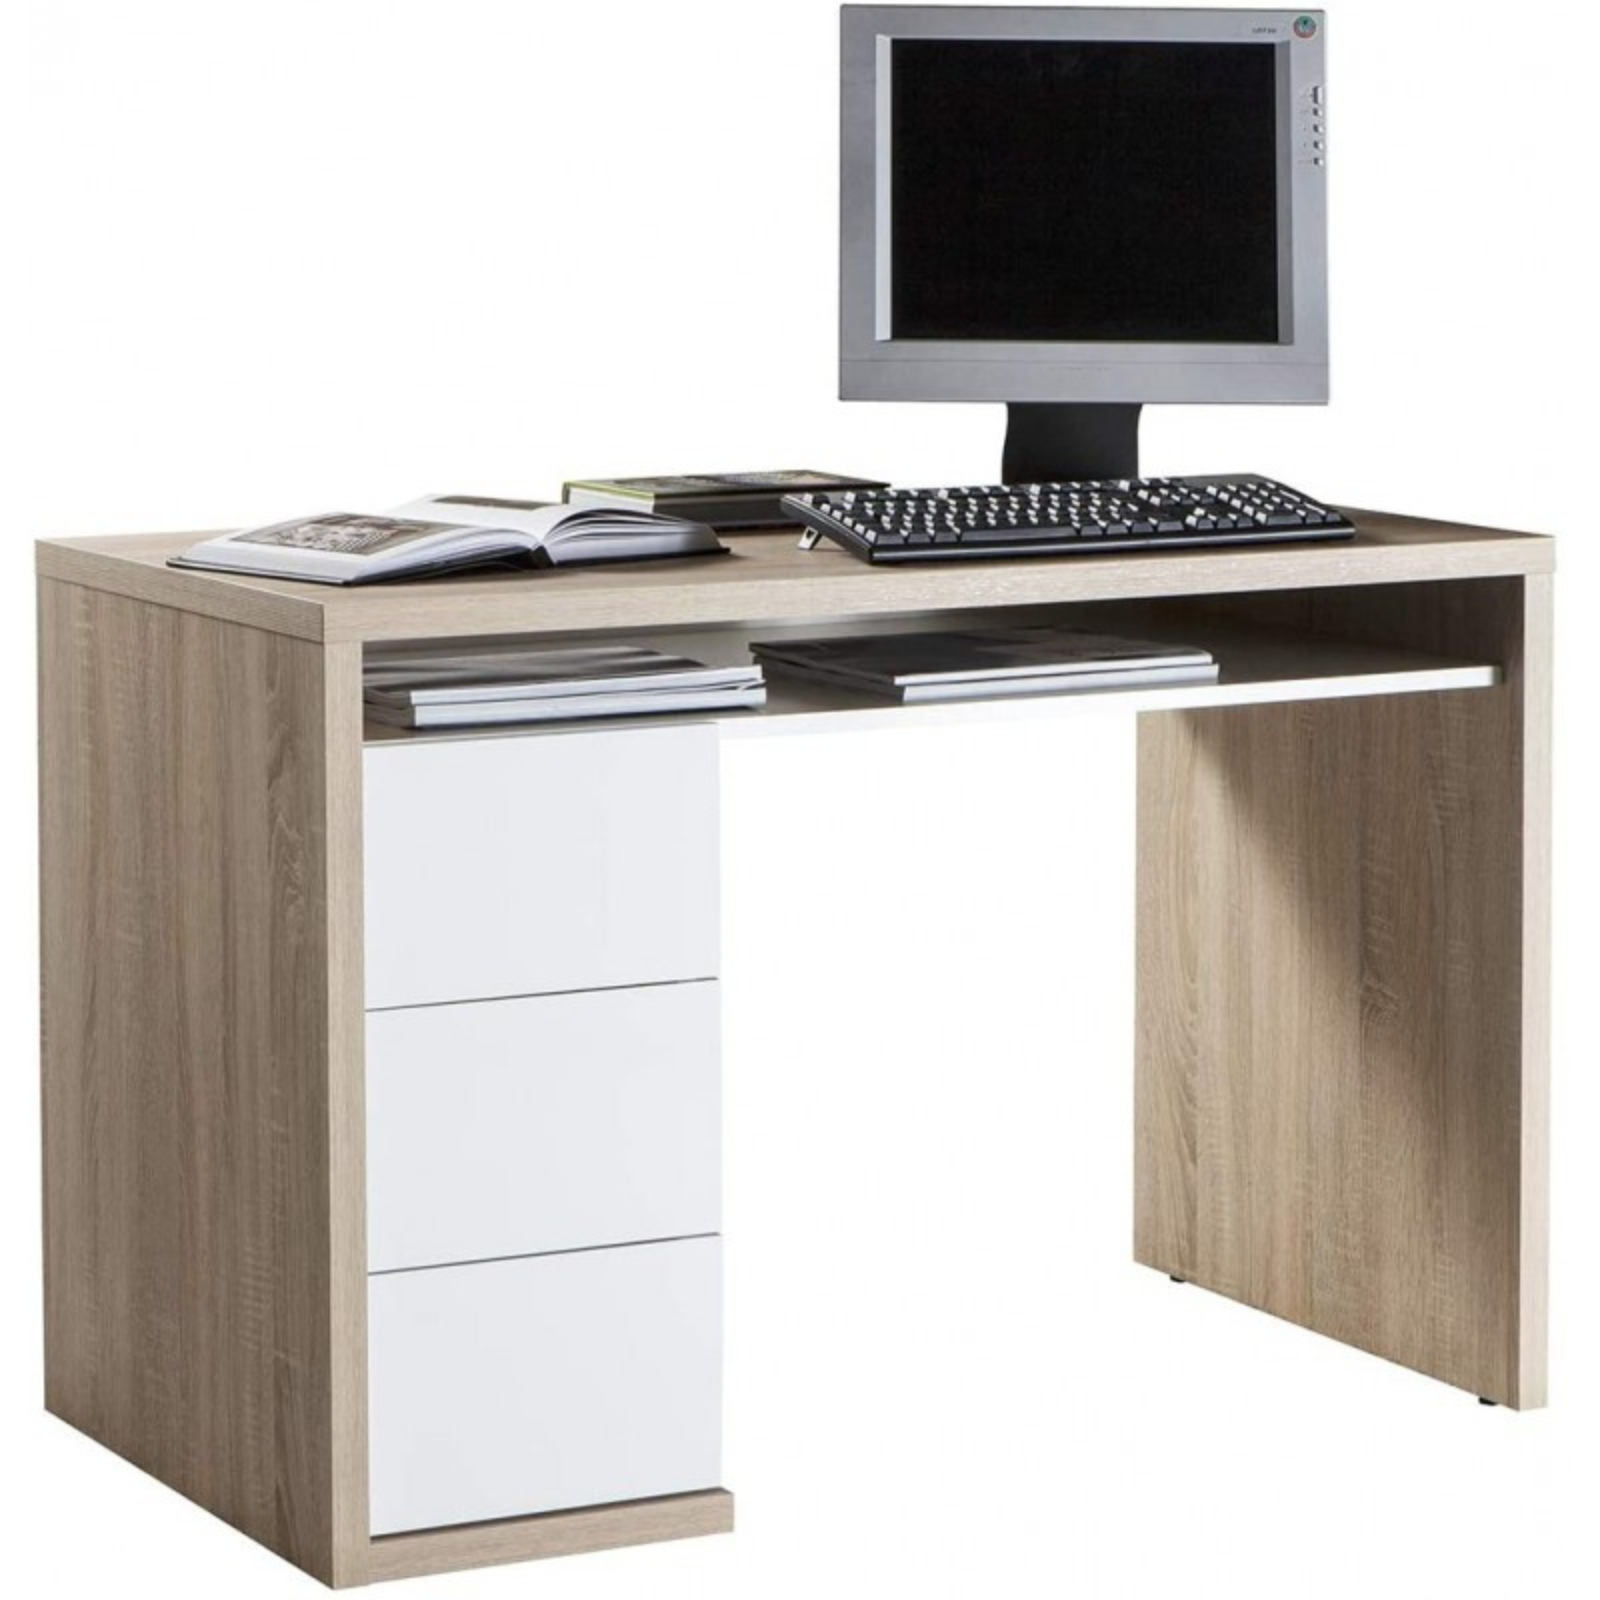 Scrivania da ufficio o camera "Litchfield" design moderno effetto finitura in legno con 3 cassetti laterali